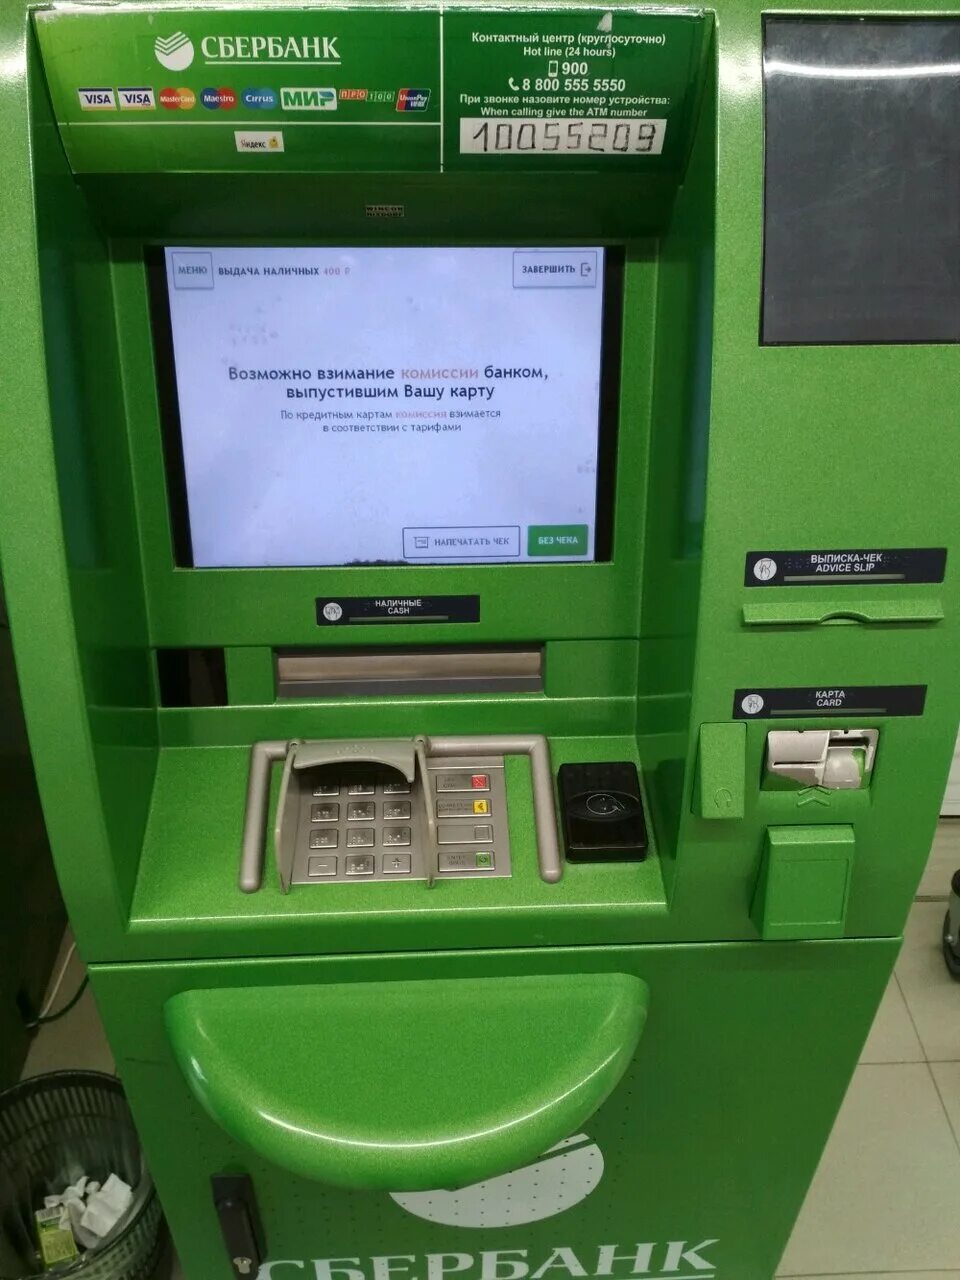 Сбербанк банкомат валюта. Банкомат Сбербанка 2022. Терминал Сбербанка. Неработающий терминал Сбербанка. Экран банкомата.